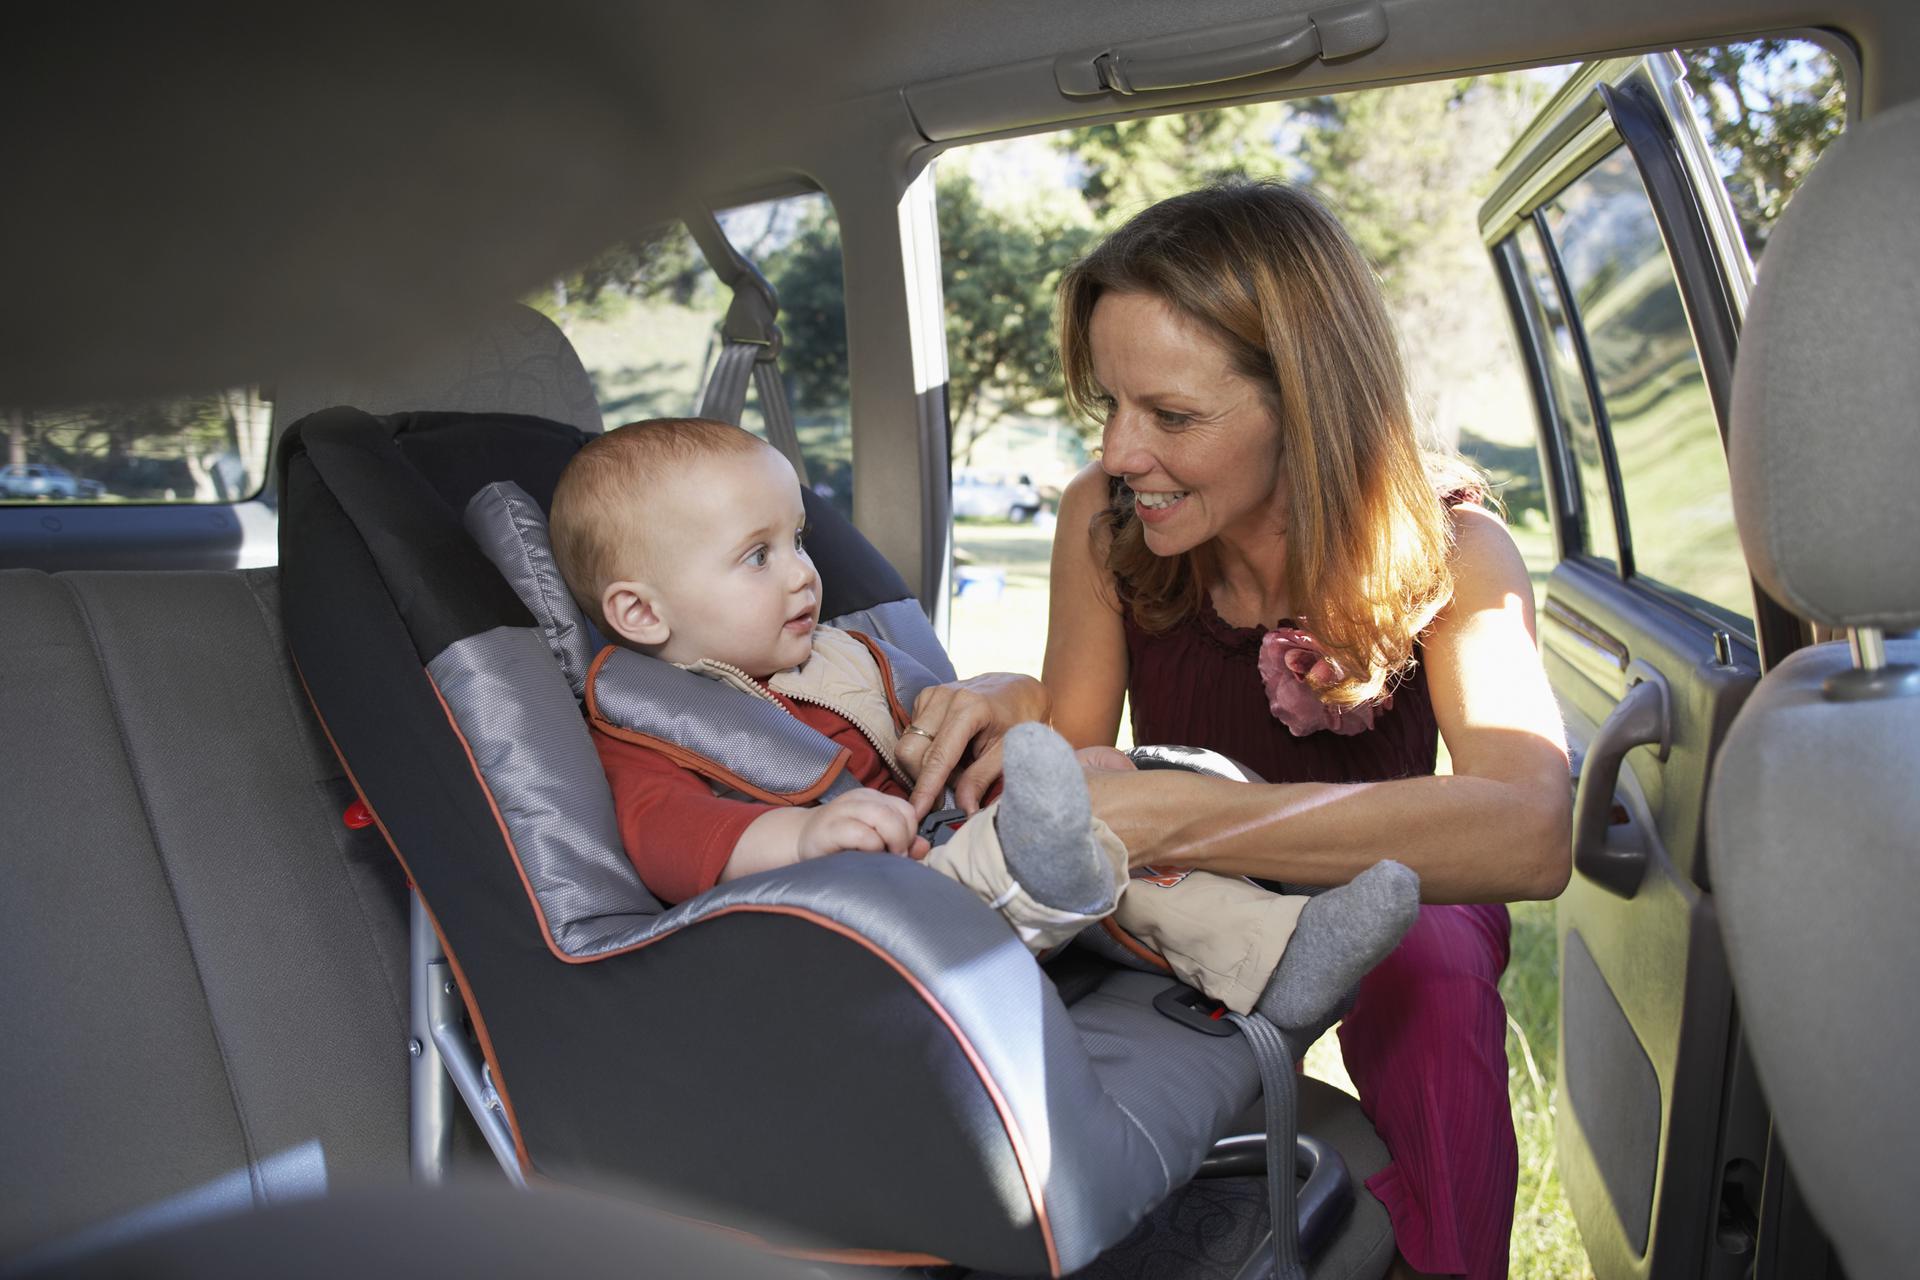 Кейт в машине с матерью. Мама с ребенком в авто. Автомобиль для детей. Автомобиль мама дети. Детское автокресло в машине.